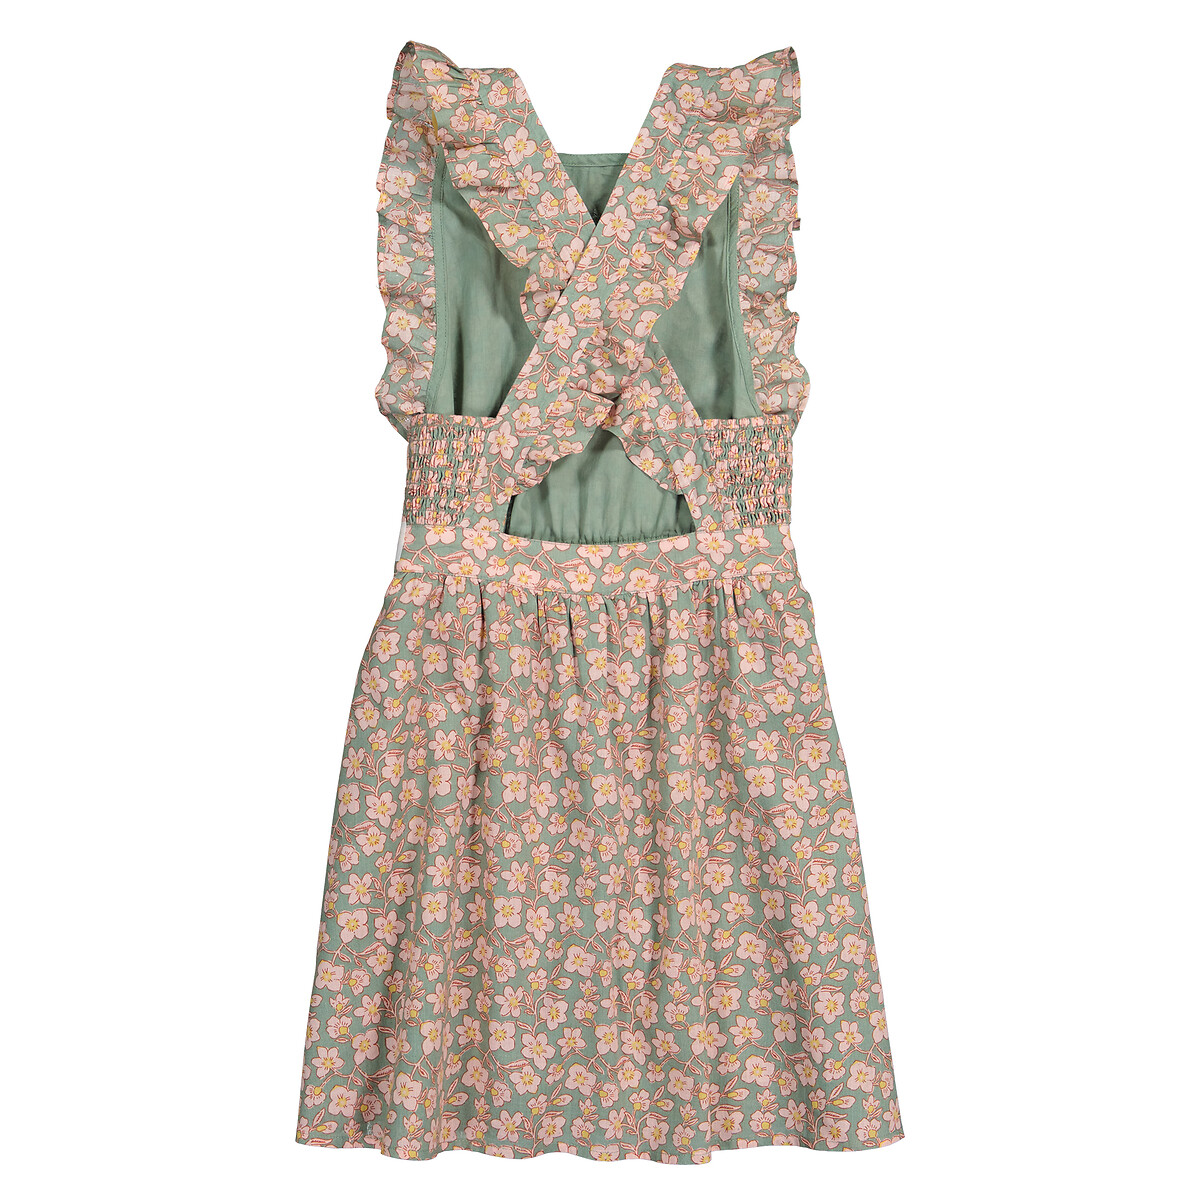 Платье Без рукавов с воланами и принтом цветы 5 лет - 108 см зеленый LaRedoute, размер 5 лет - 108 см - фото 4